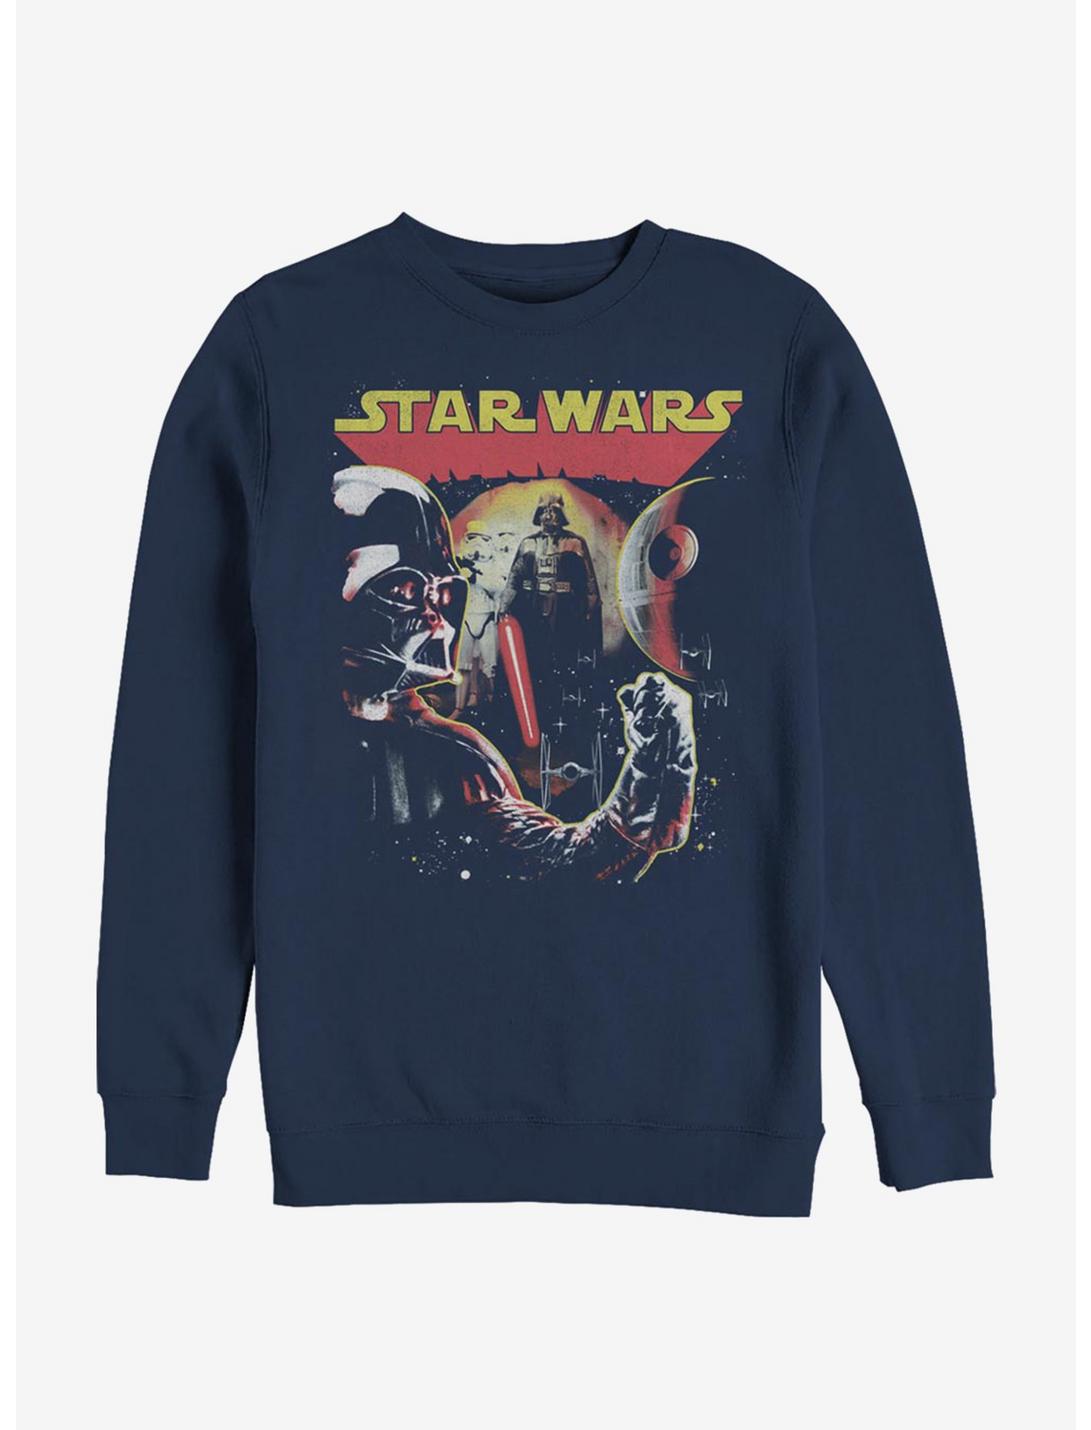 Star Wars Nasty Bunch Sweatshirt, NAVY, hi-res